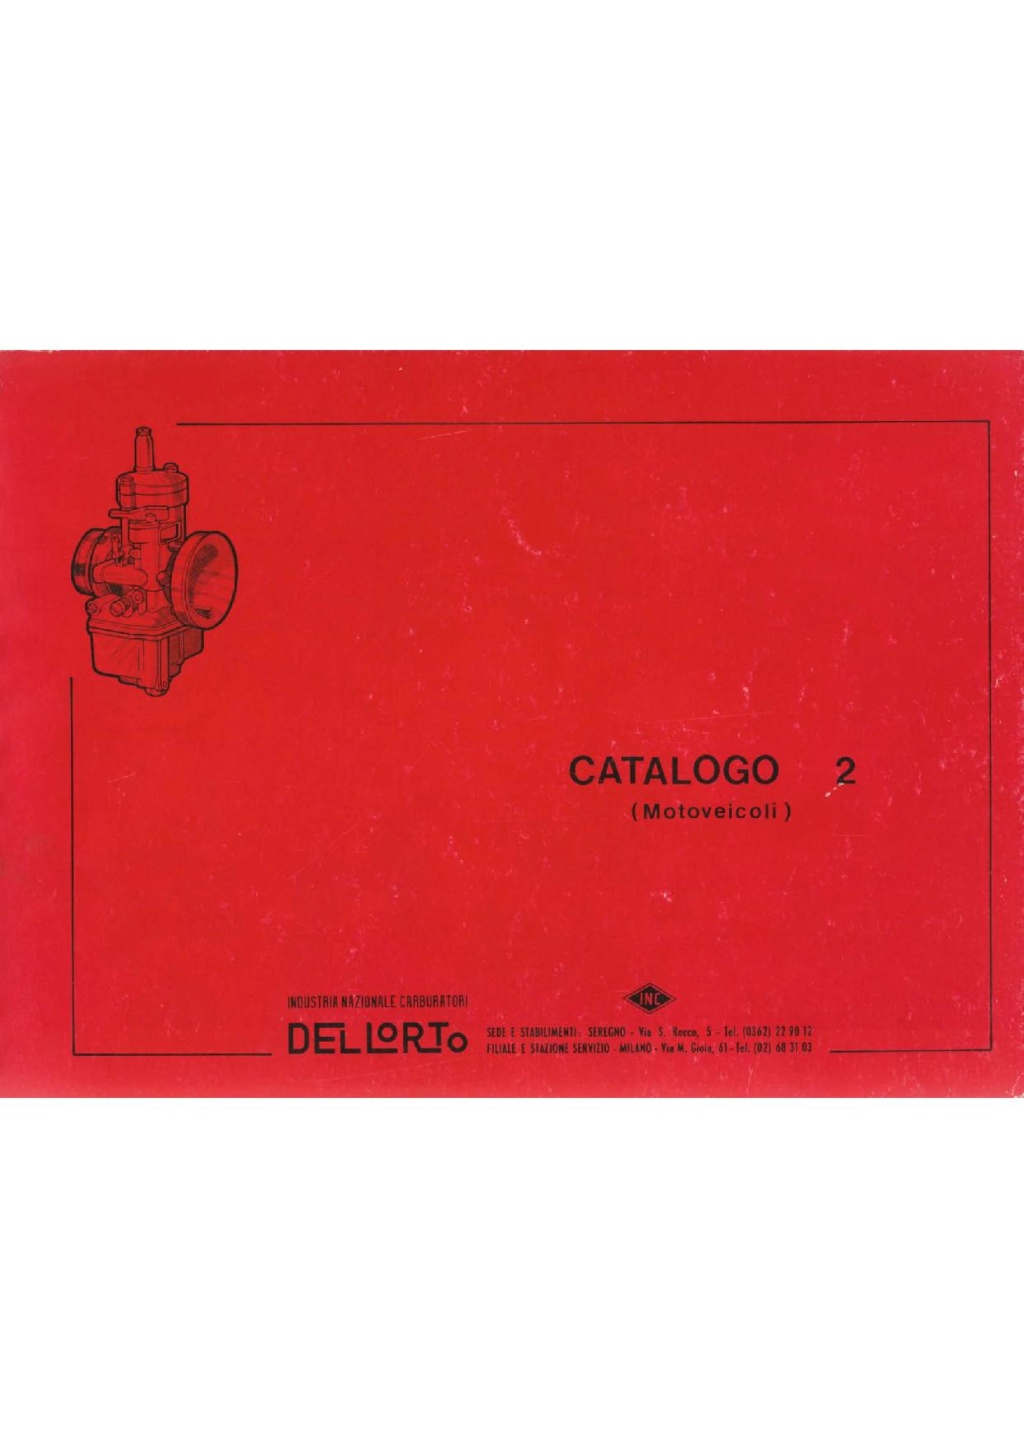 allumage électronique pour corsaro 125 de 1960 - Page 3 Dellor10